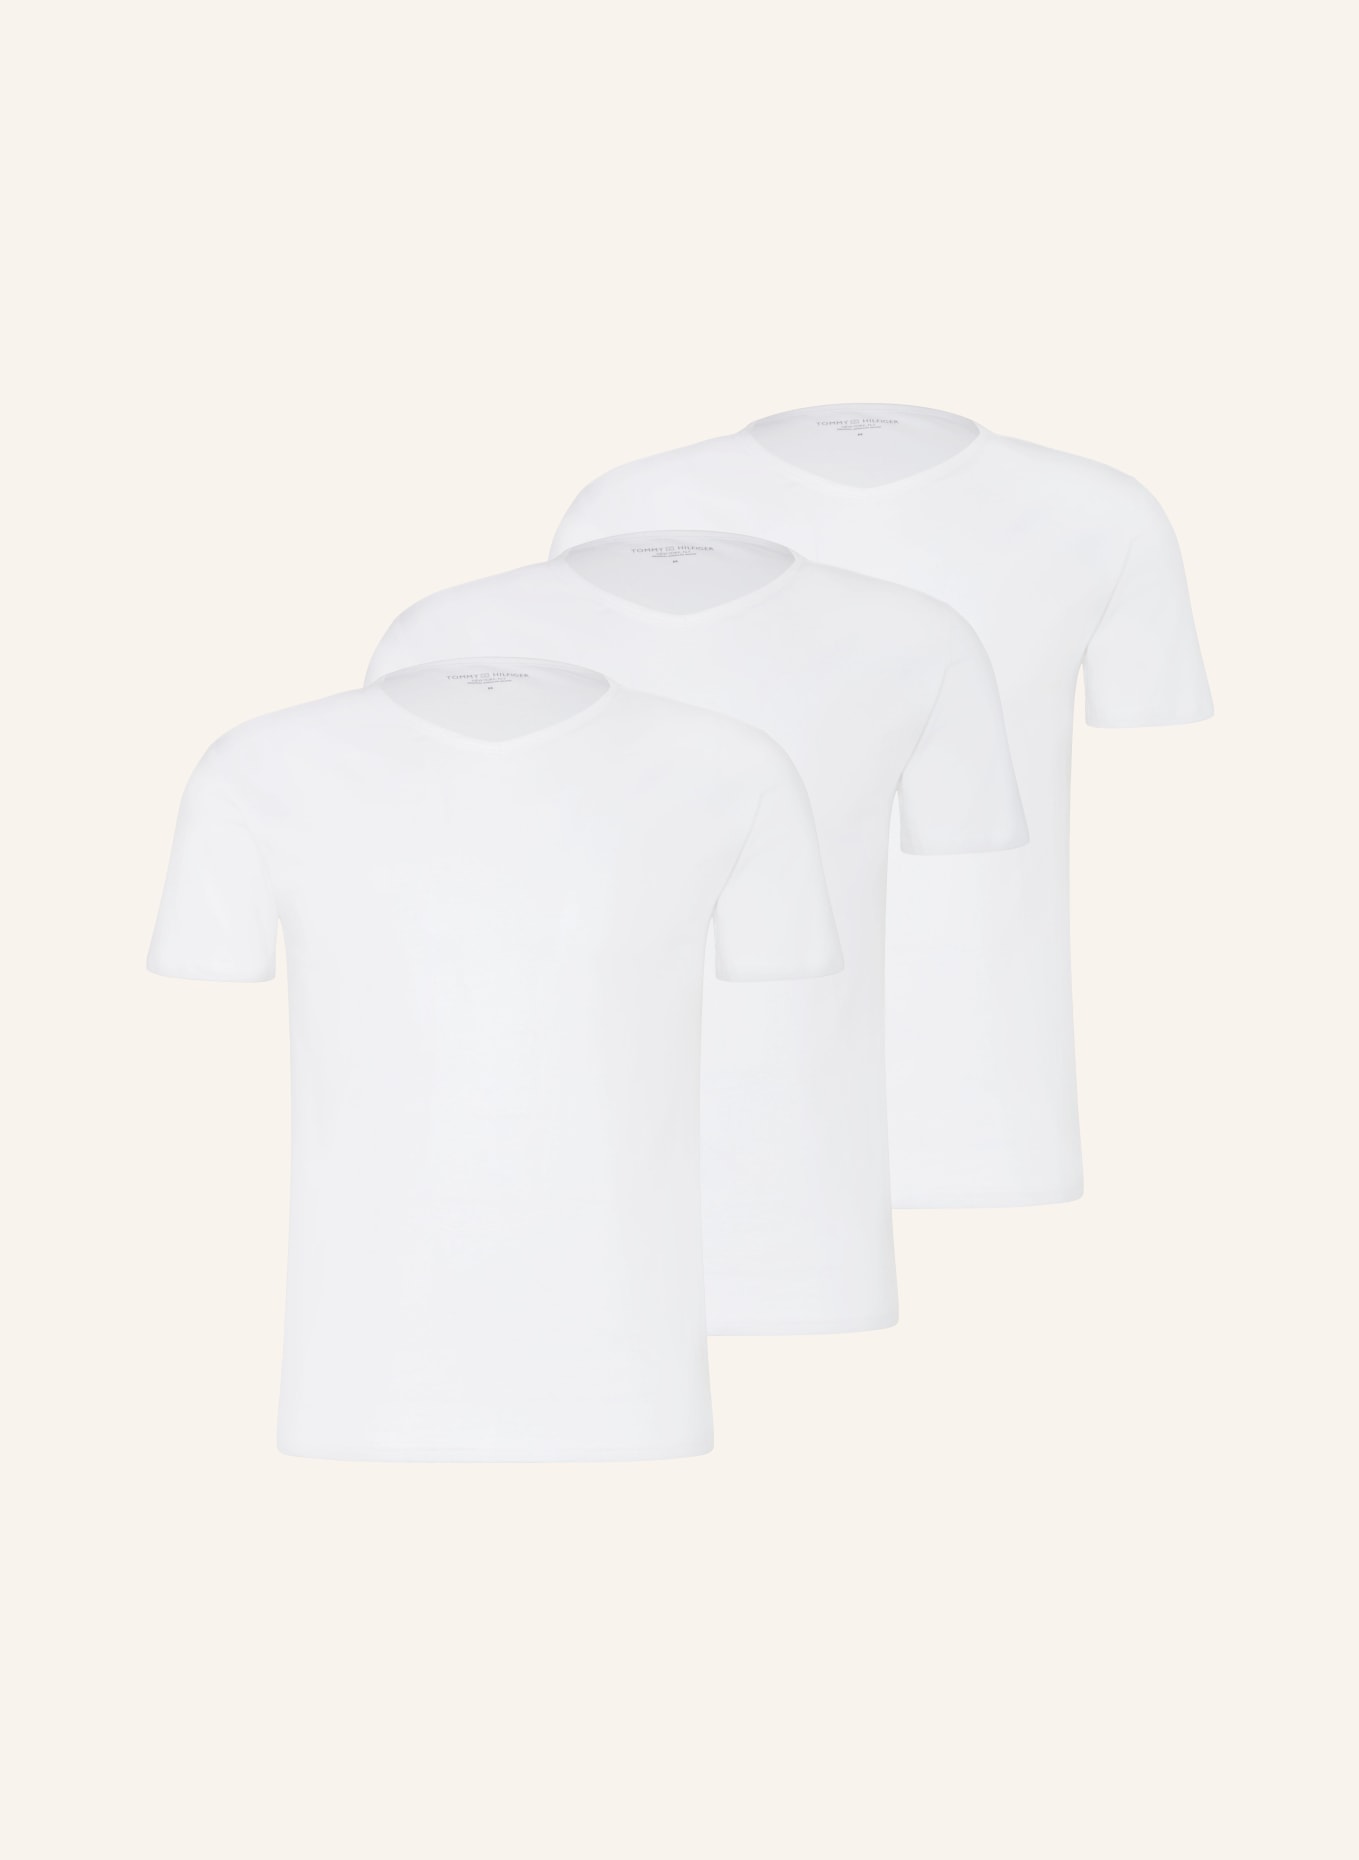 TOMMY HILFIGER 3-pack V-neck shirts, Color: WHITE (Image 1)